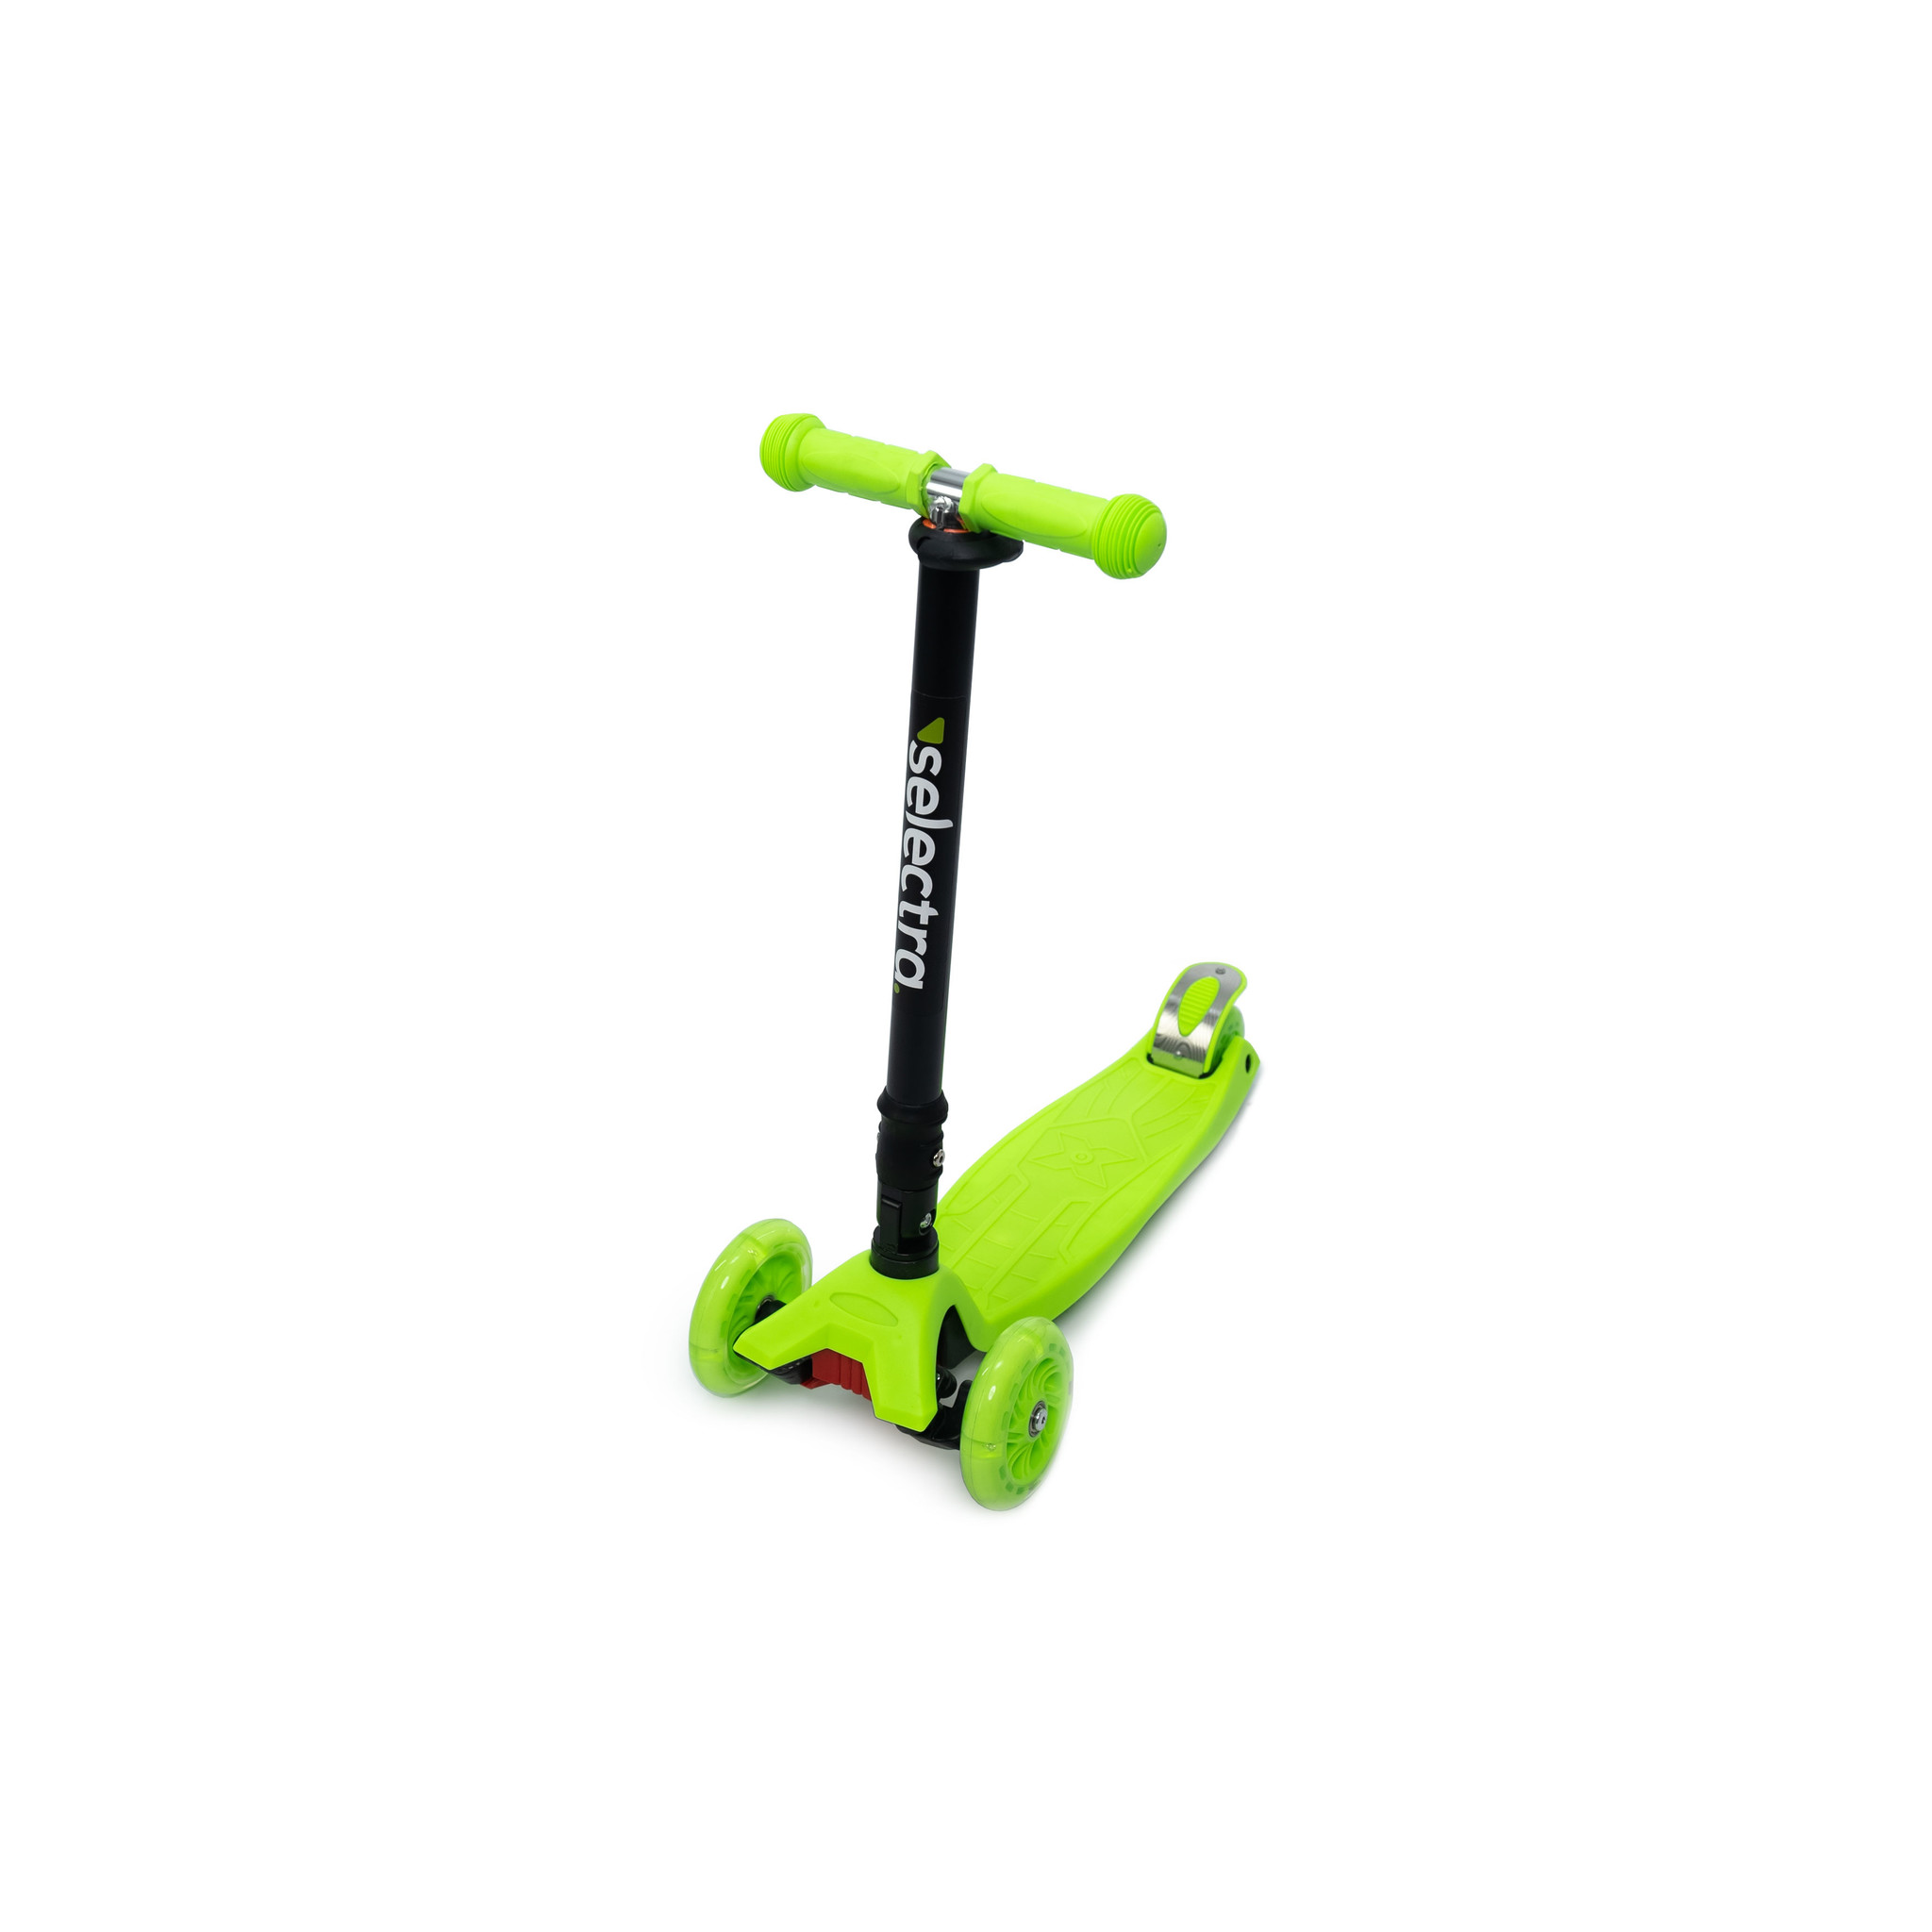 Selectra kinderstep met 4 lichtgevende wielen Kick step voor van t/m 9 jaar – Led scooter met click and functie - Green - Steemastore